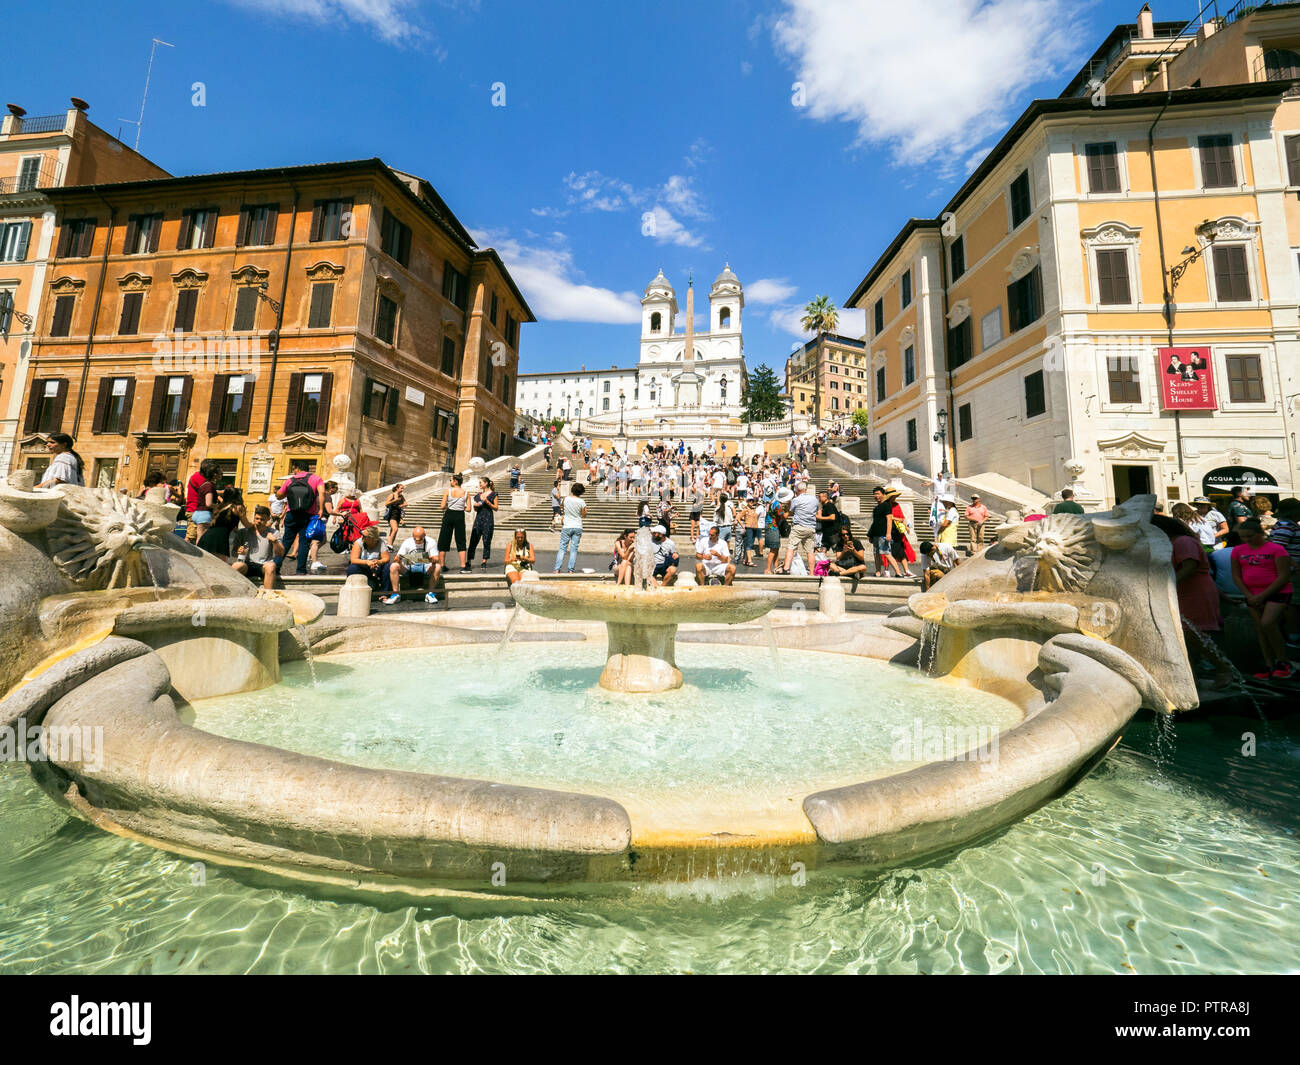 Fontana della Barcaccia in Piazza di Spagna with the Spanish Steps and the church of Trinità dei Monti beyond - Rome, Italy Stock Photo